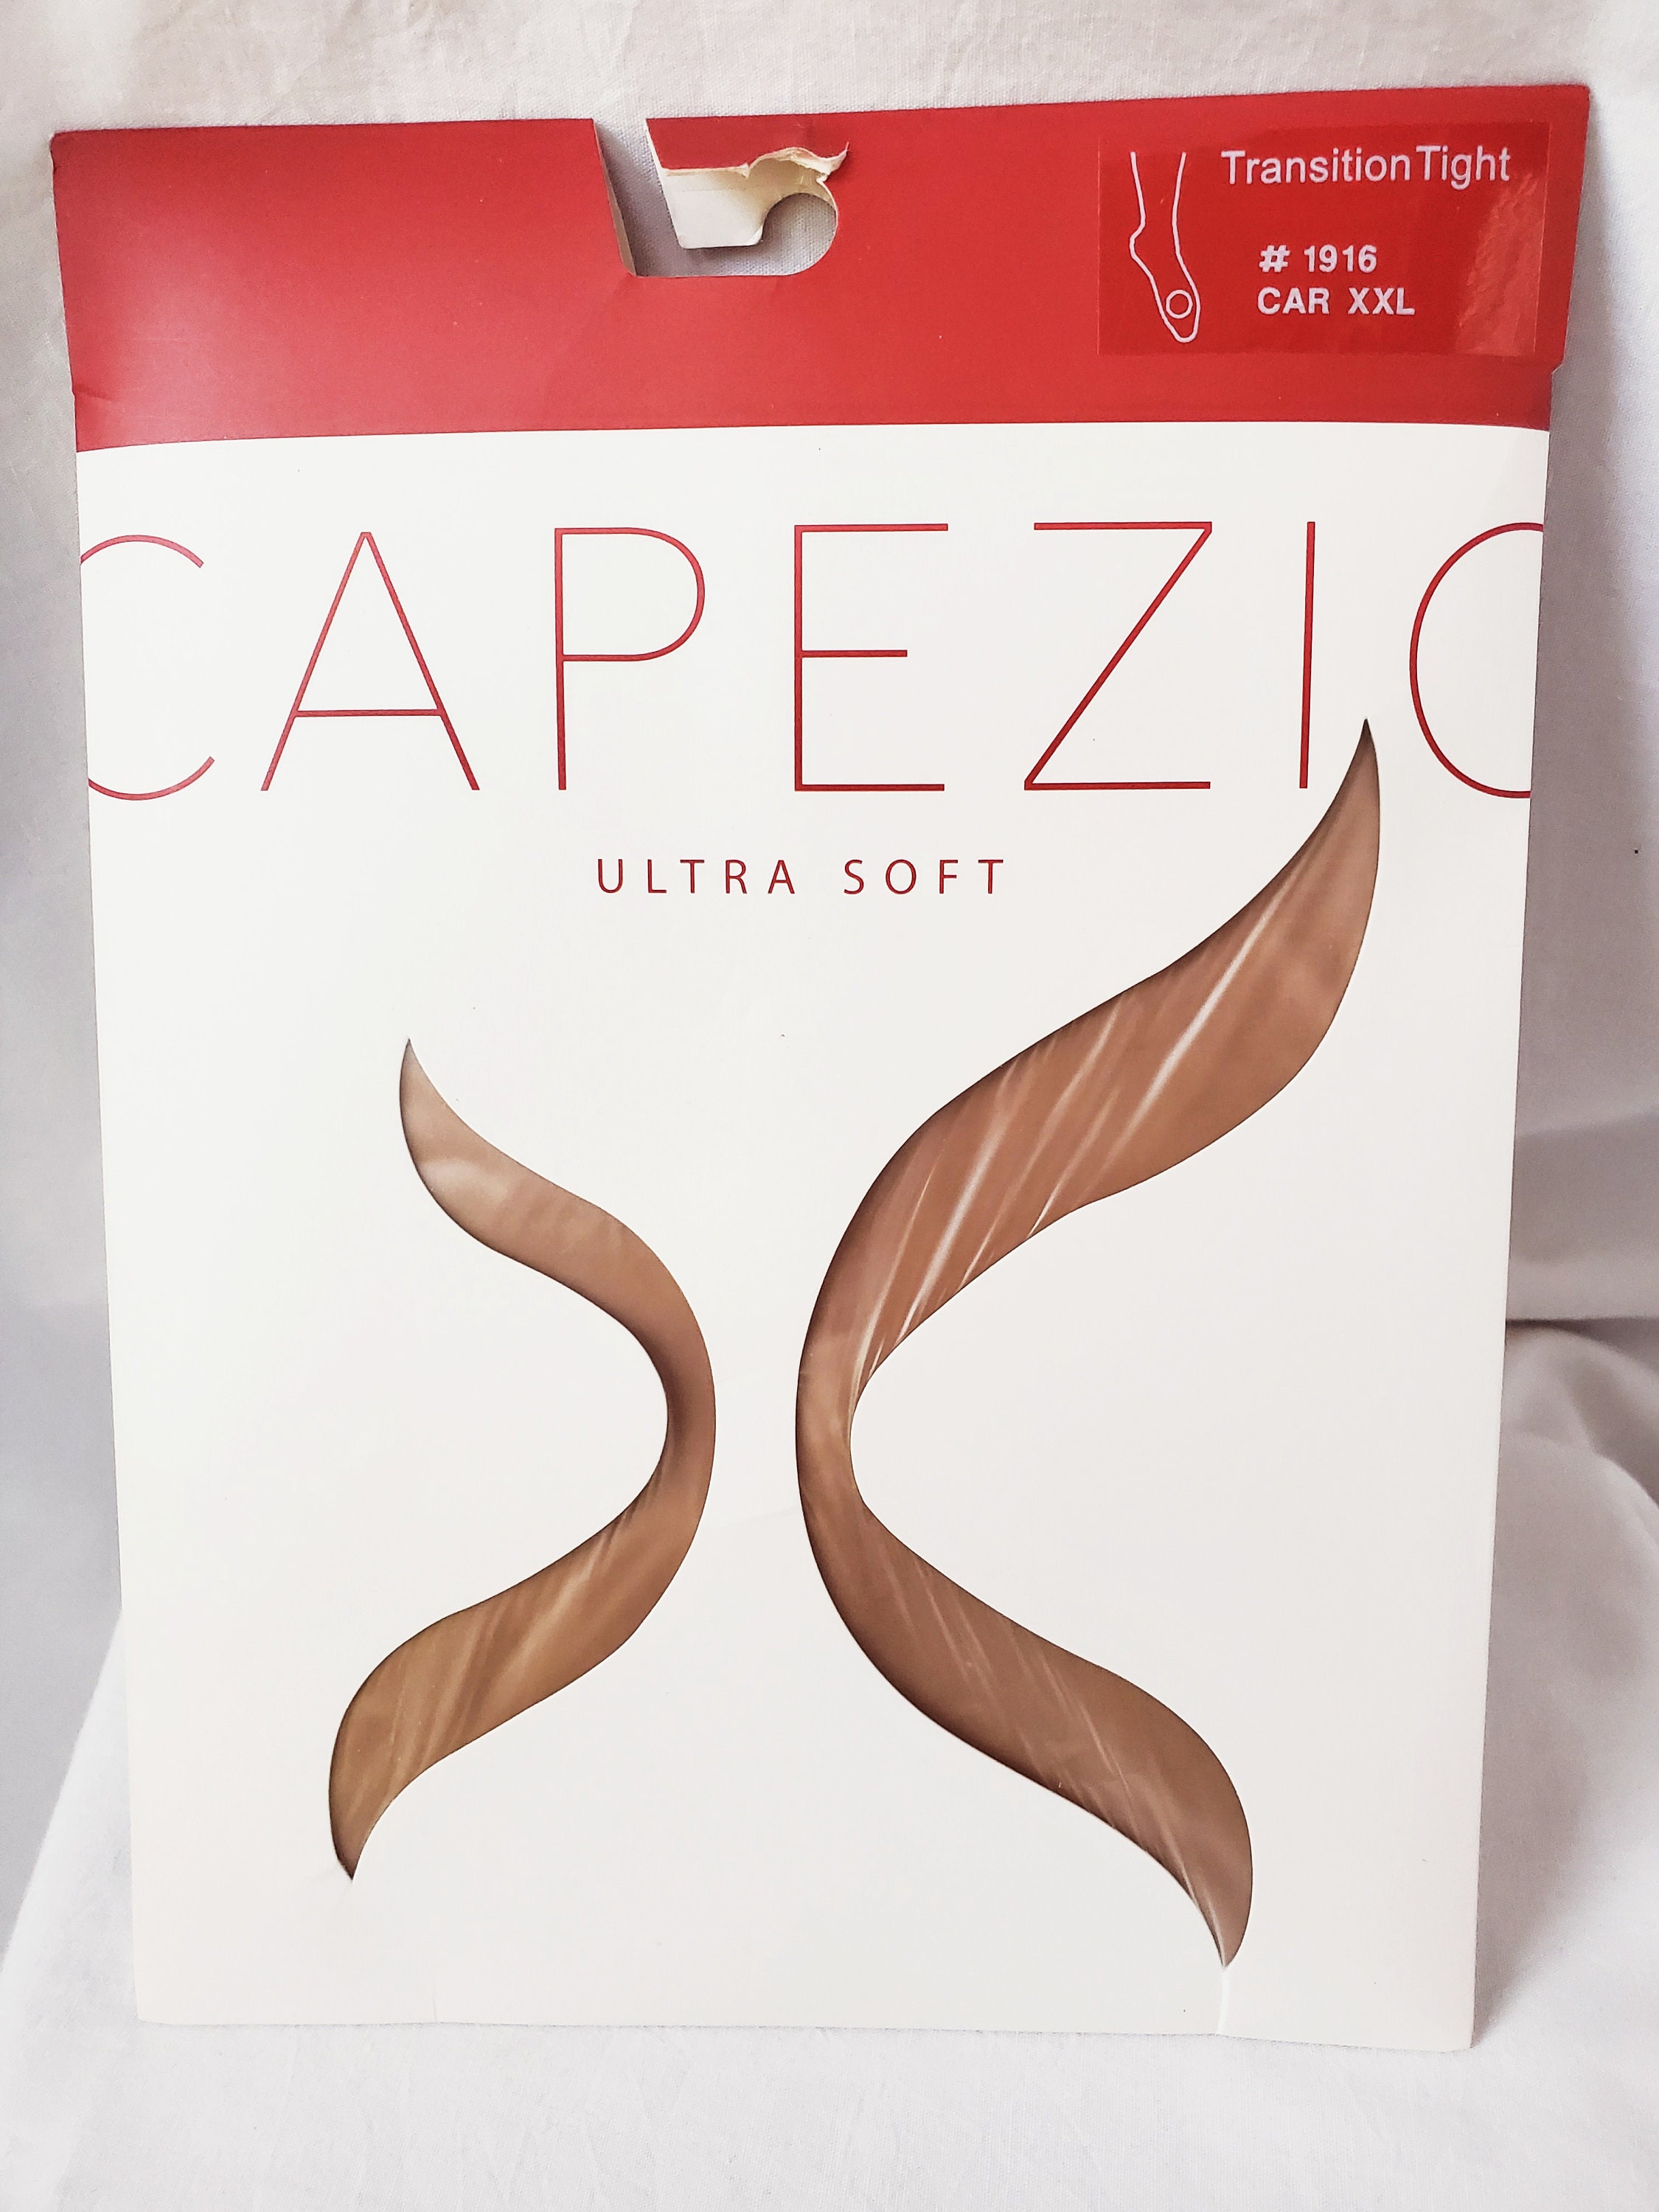 CAPEZIO Ultra Soft Transition Tight 1916 / XXL Caramel / Unused